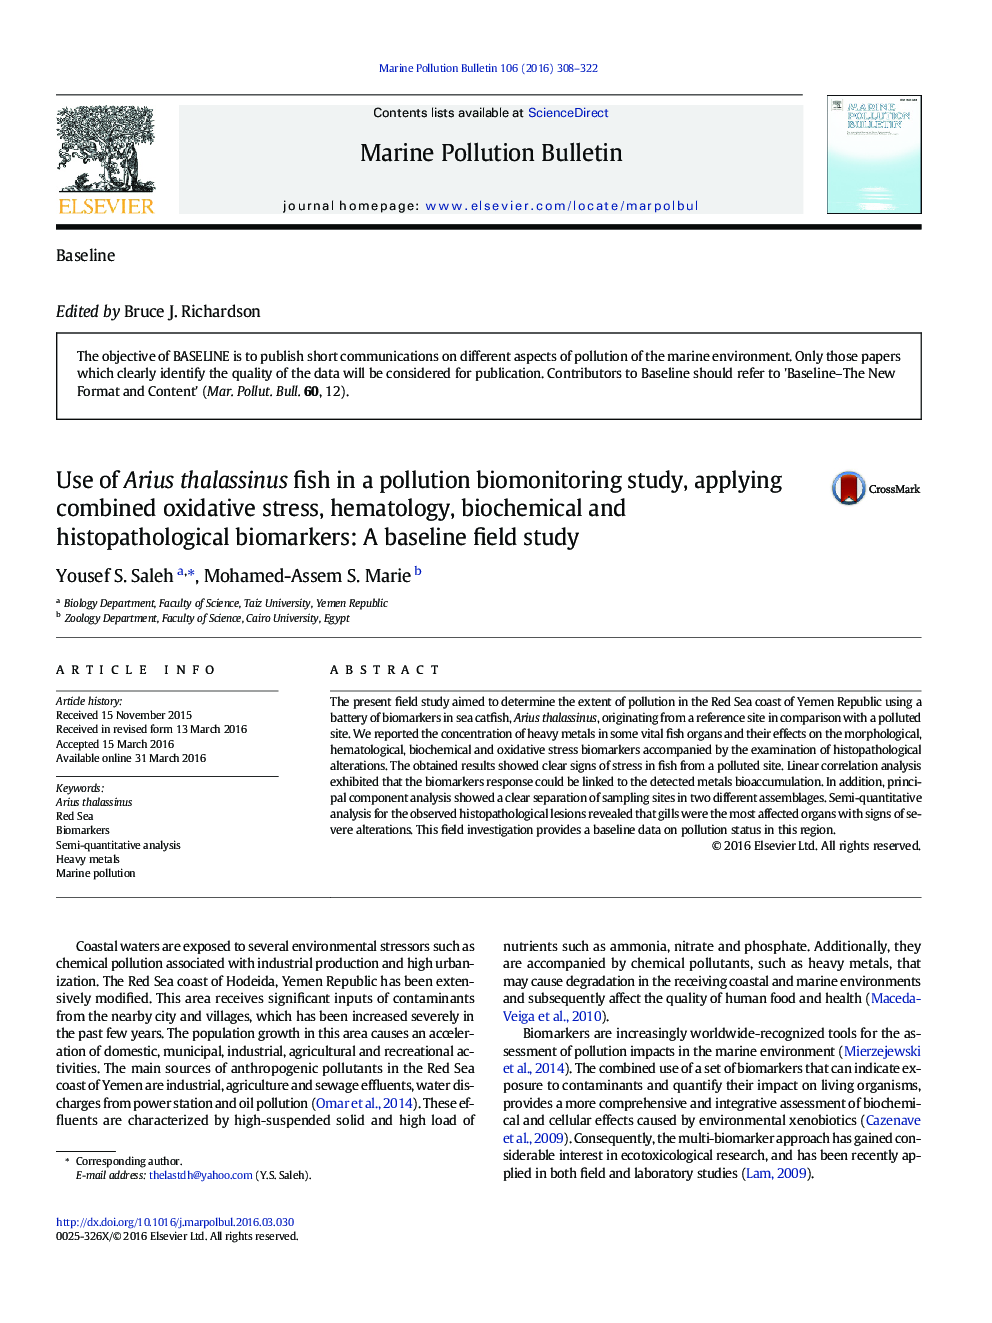 استفاده از ماهی آریوس تالاسینز در یک مطالعه بیومونیتورینگ آلودگی، با استفاده از ترکیب استرس اکسیداتیو، هماتولوژی، بیومارکرهای بیوشیمیایی و هیستوپاتولوژیک: مطالعه زمینه ای پایه 